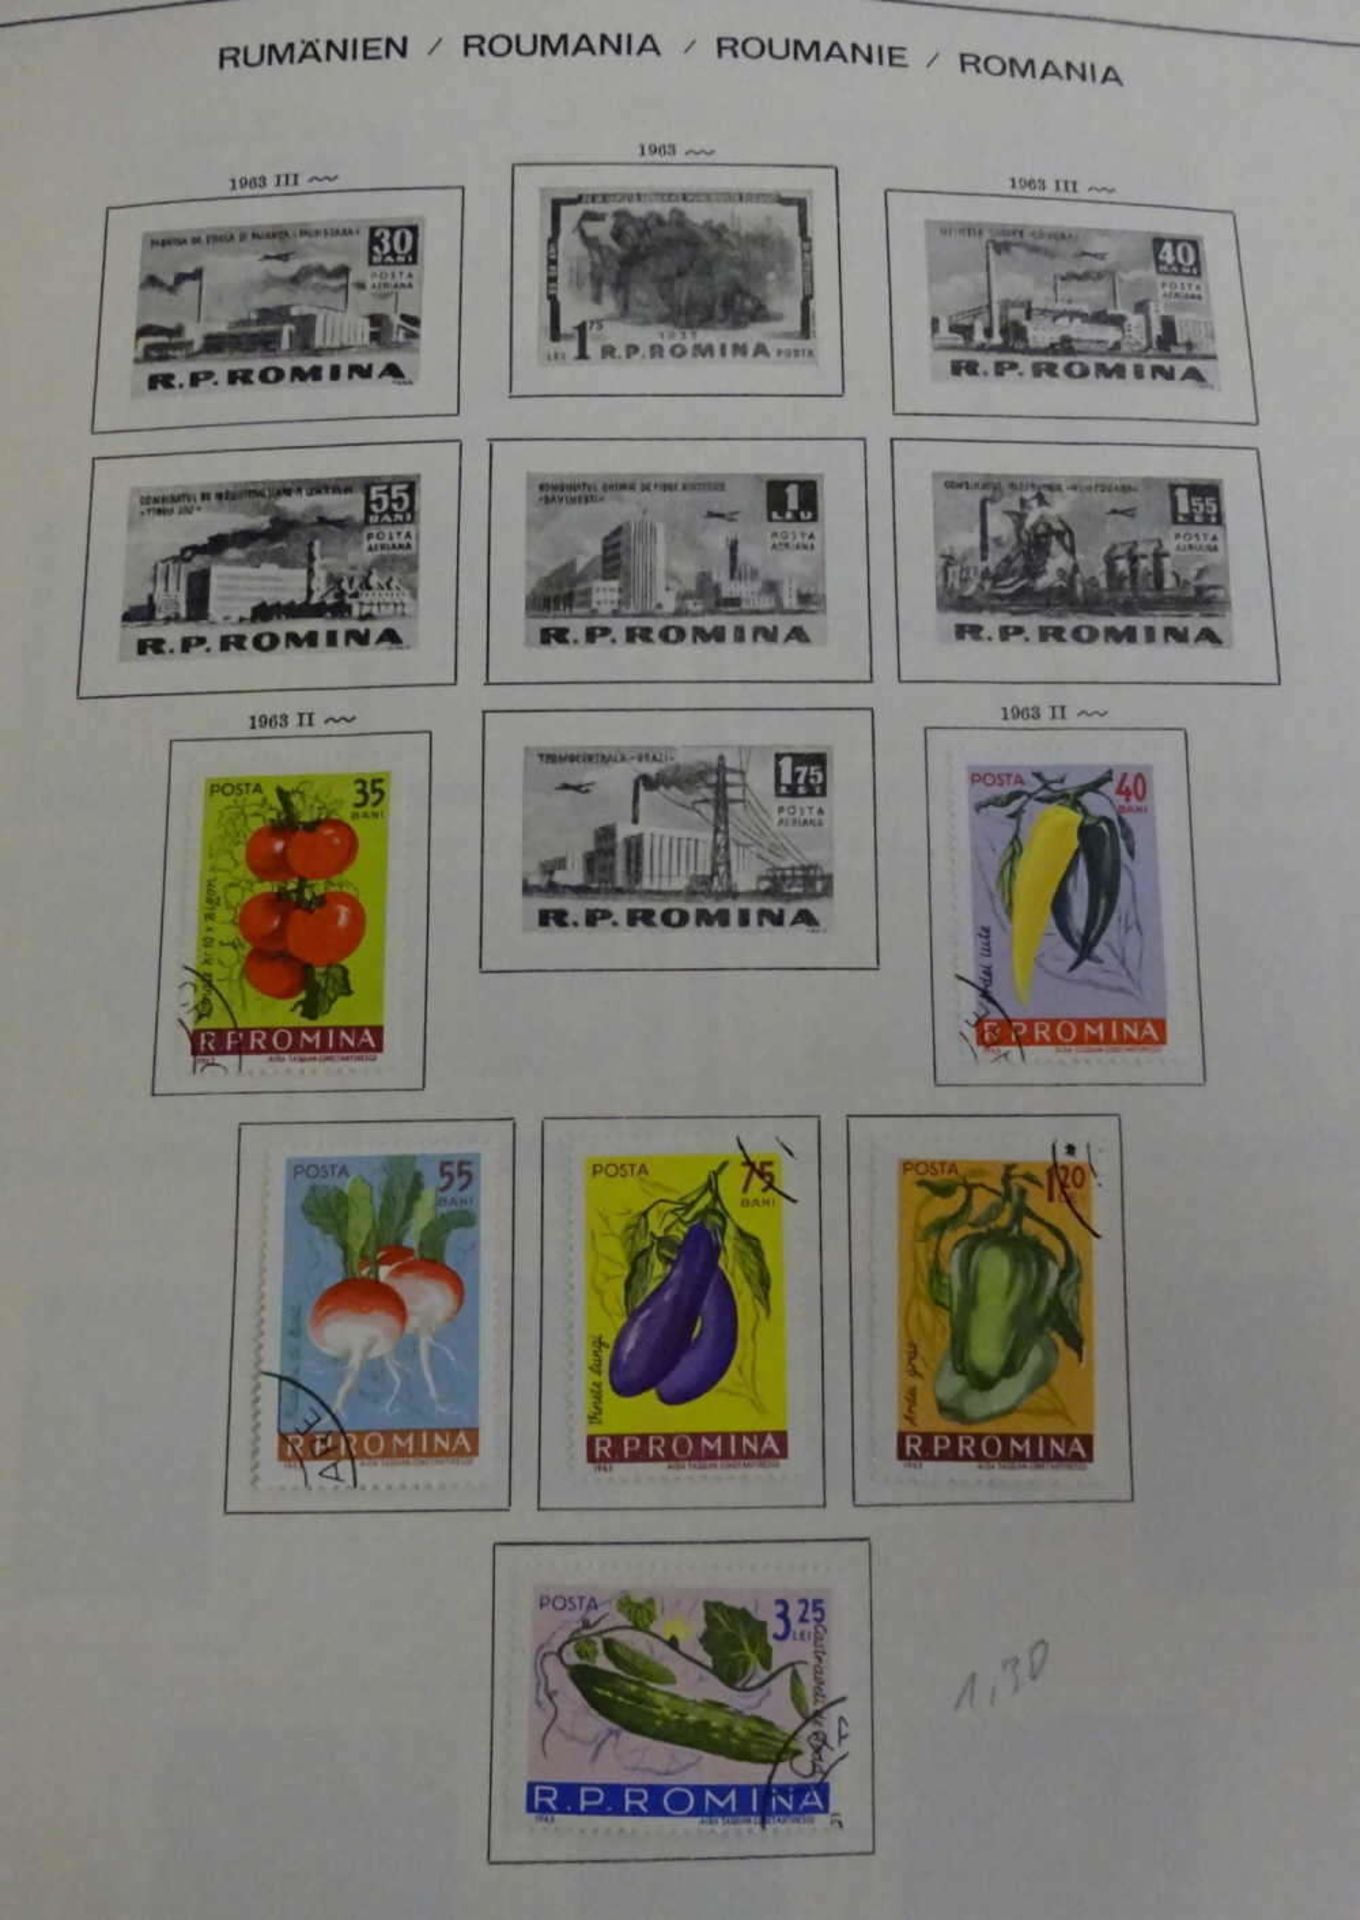 Albanien, Rumänien und Ungarn Sammlung. Diverse Katalognummern. Ausbaufähige Sammlung. Michelwert - Bild 2 aus 2